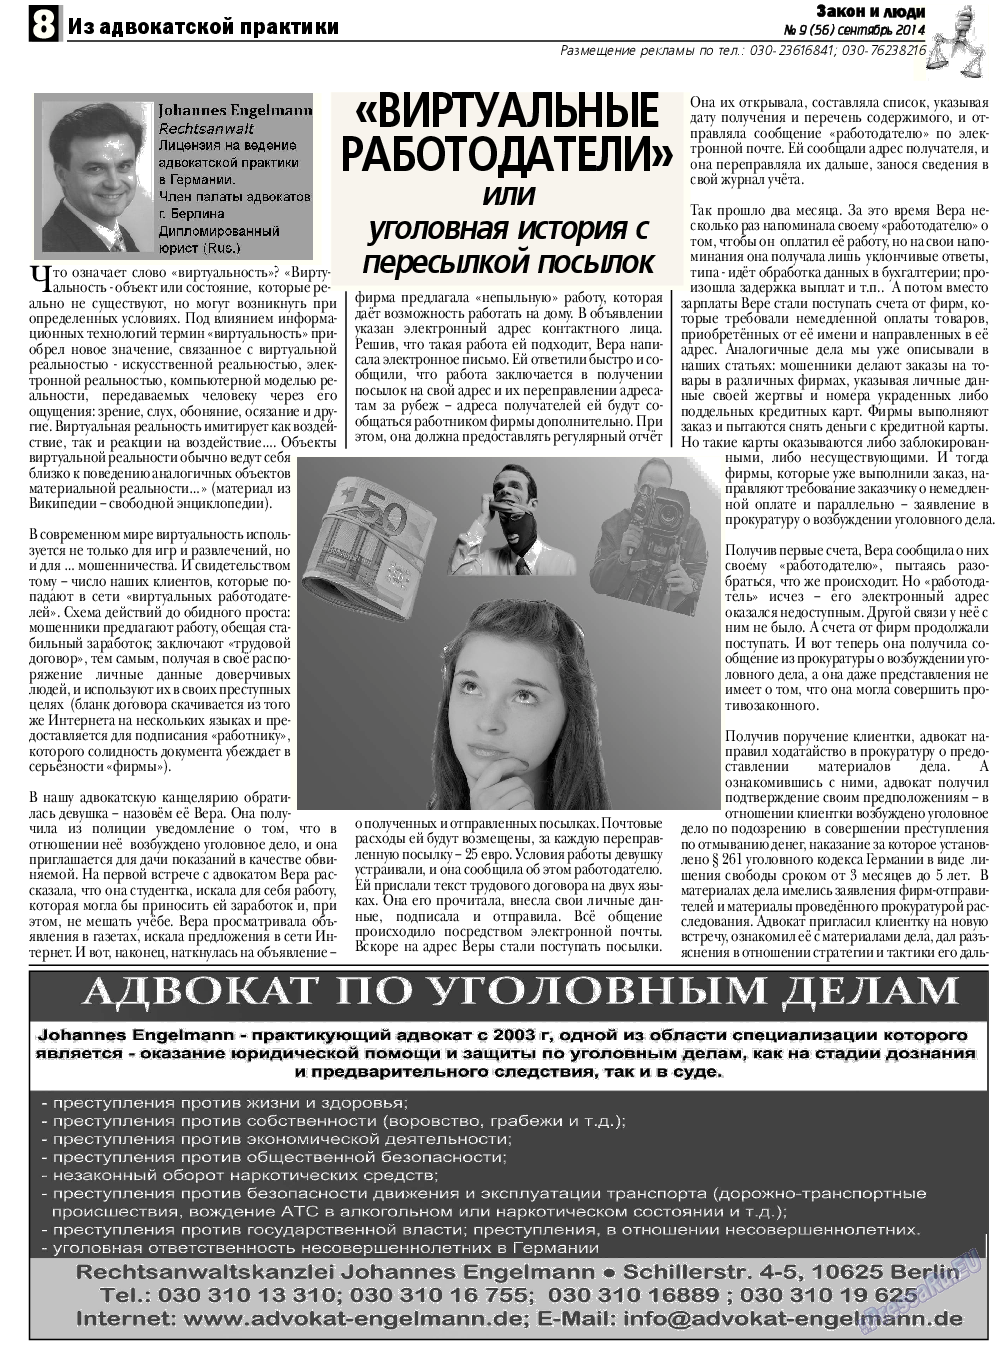 Закон и люди, газета. 2014 №9 стр.8